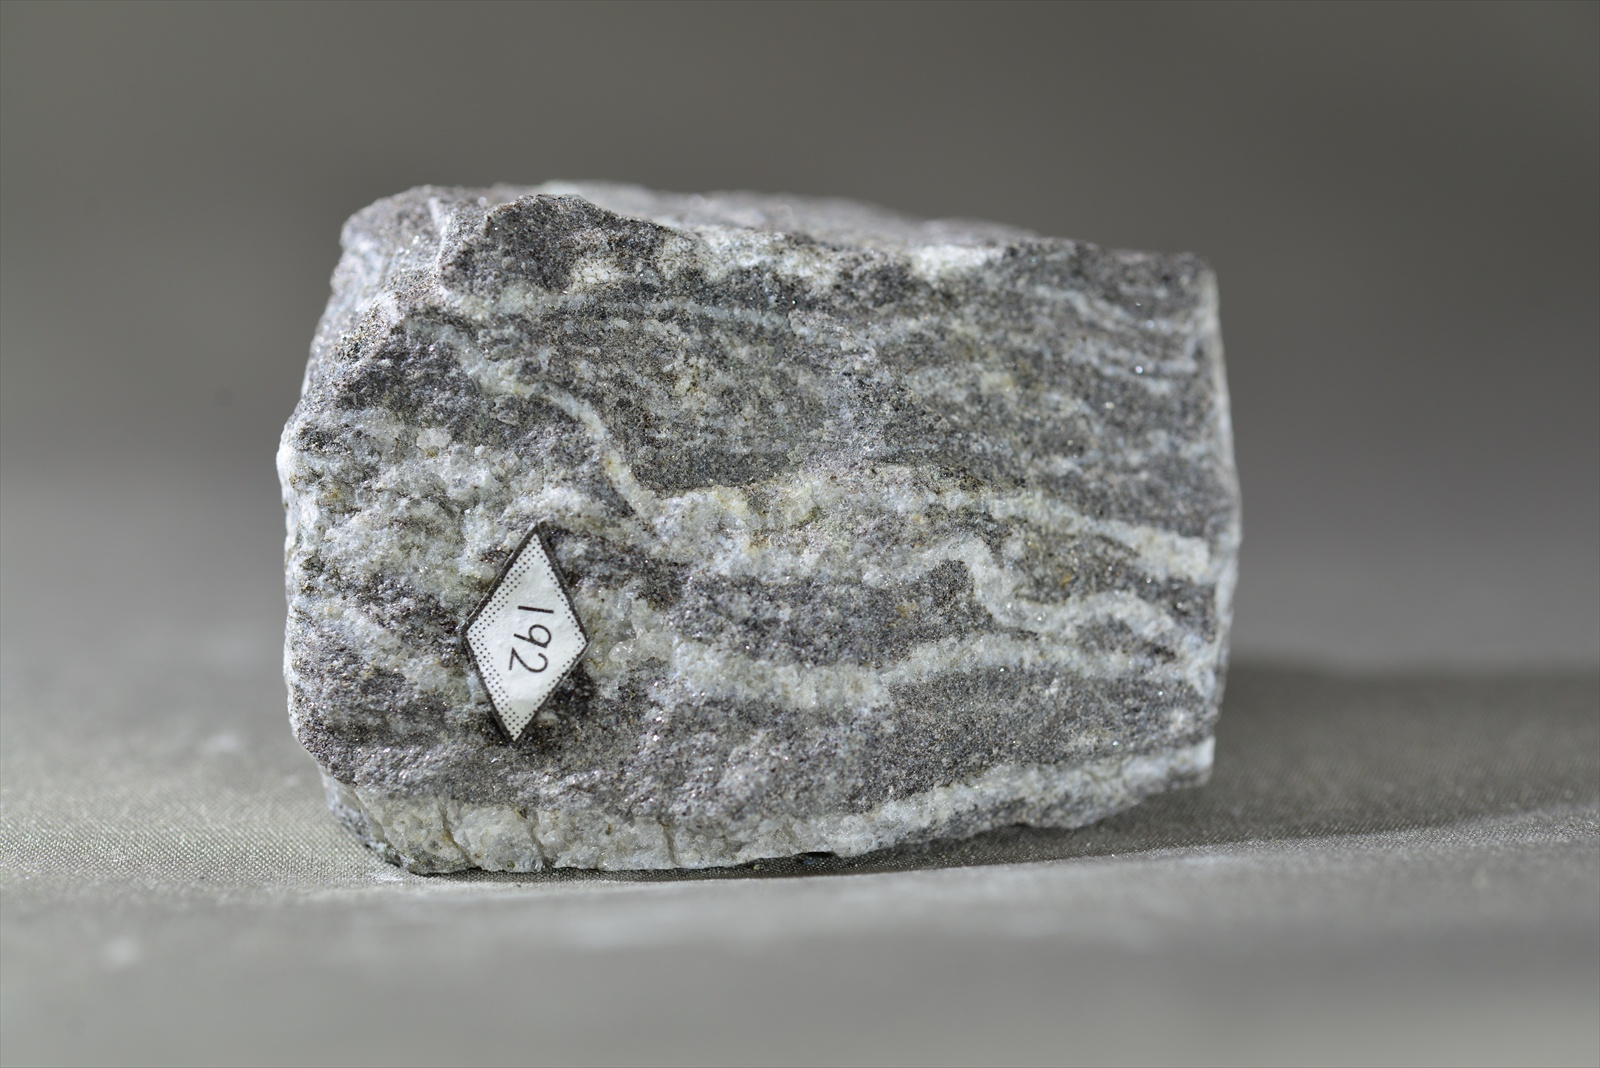 黒雲母片麻岩(縞状片麻岩) Biotite gnesis(Banded gnesis)